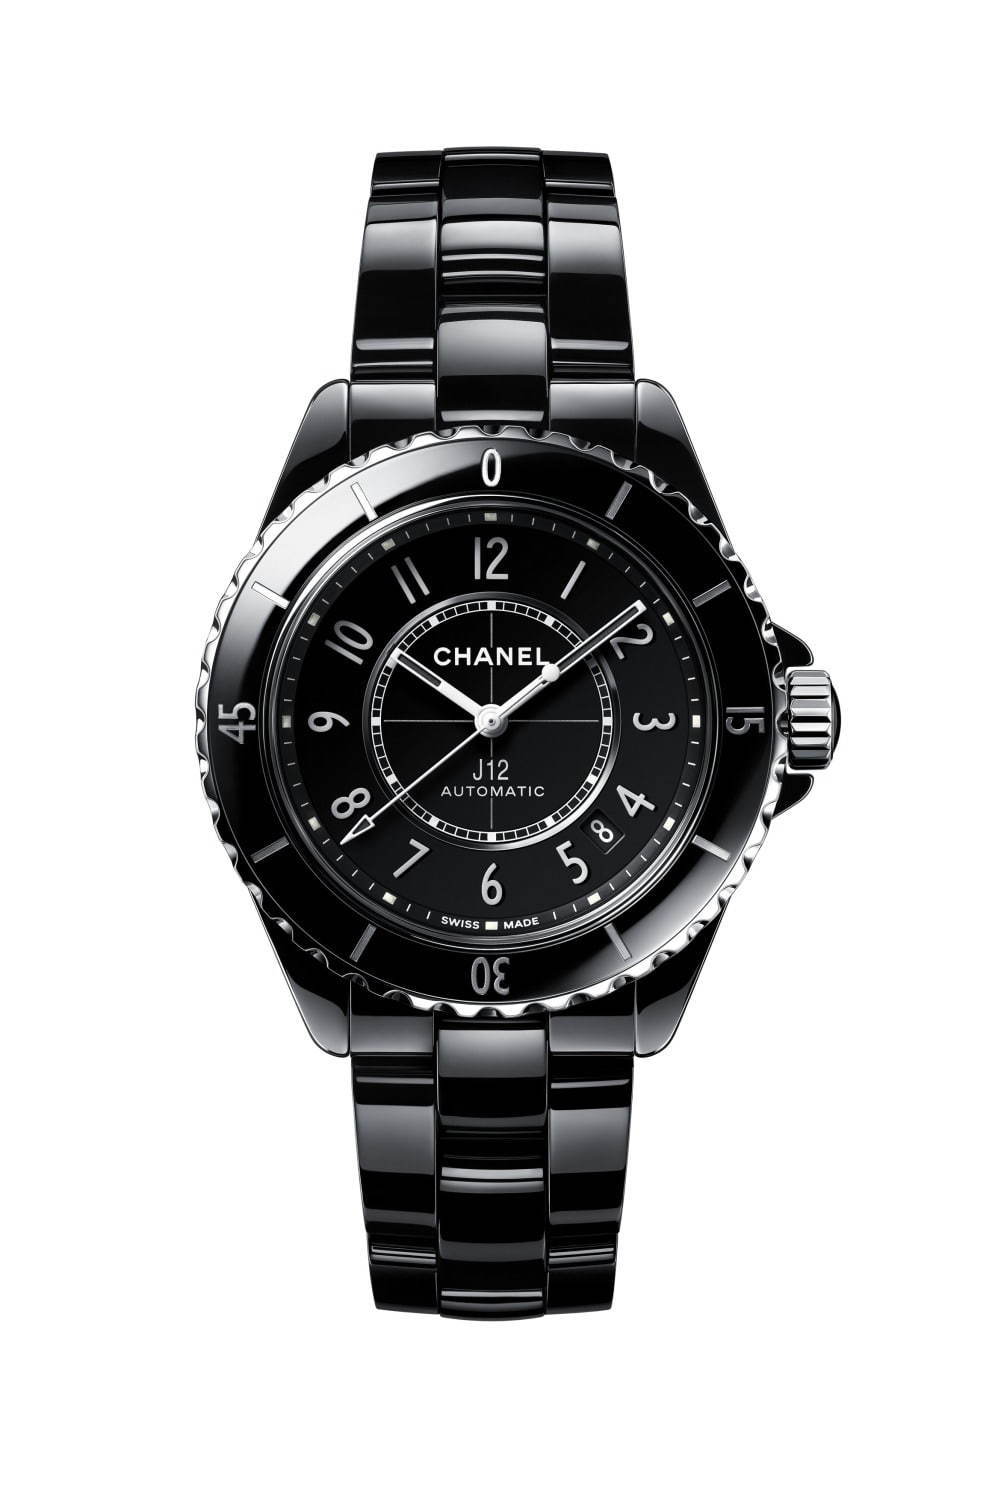 シャネルのアイコン腕時計「J12」メンズ・レディースの人気モデルは